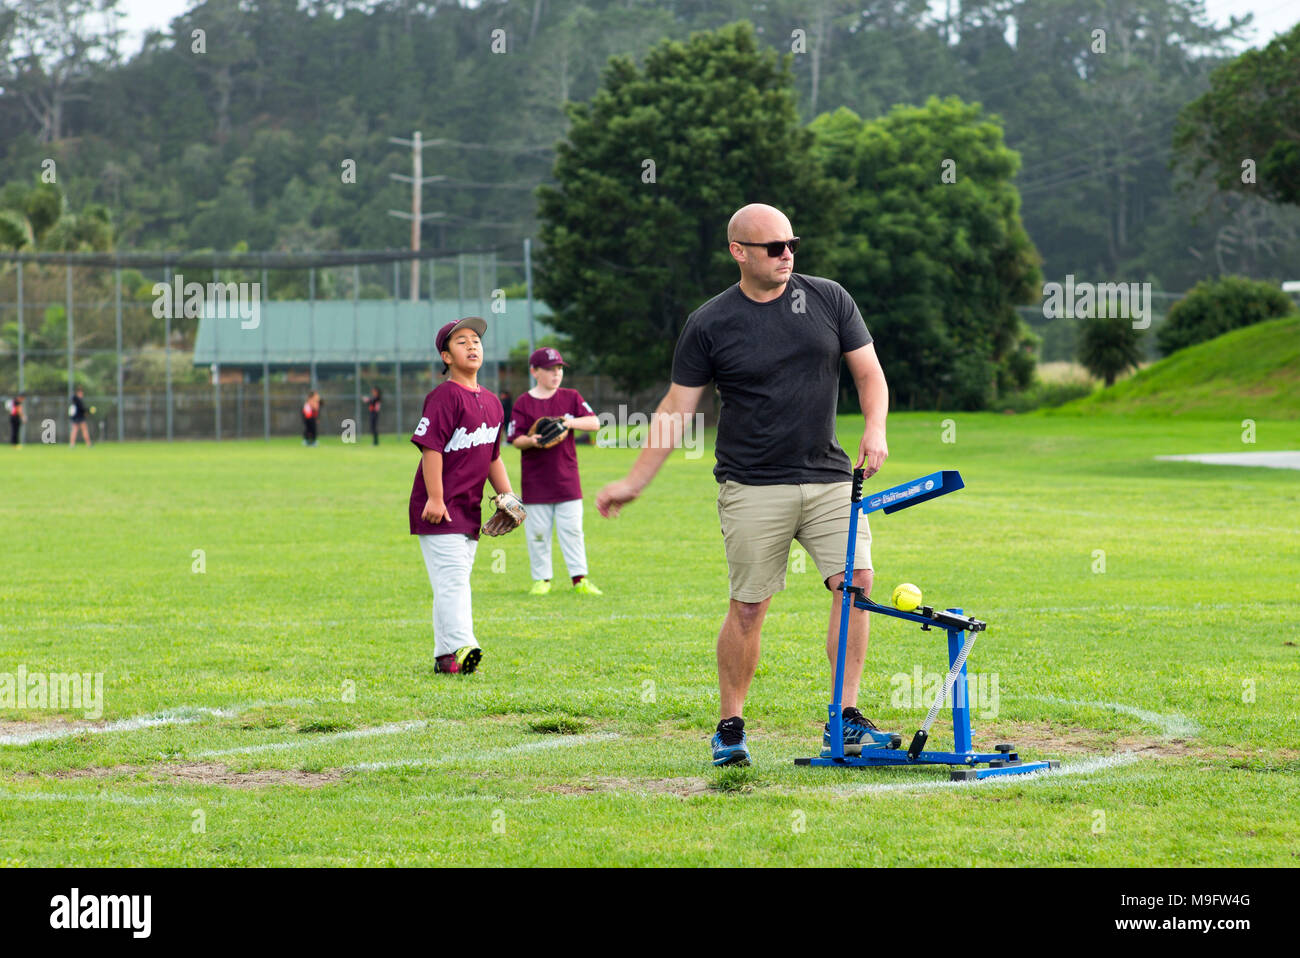 Ein erwachsener verwendet ein Pitching Machine folgenden Obwohl mit Pitching arm Aktion bei Junior Softball. Stockfoto